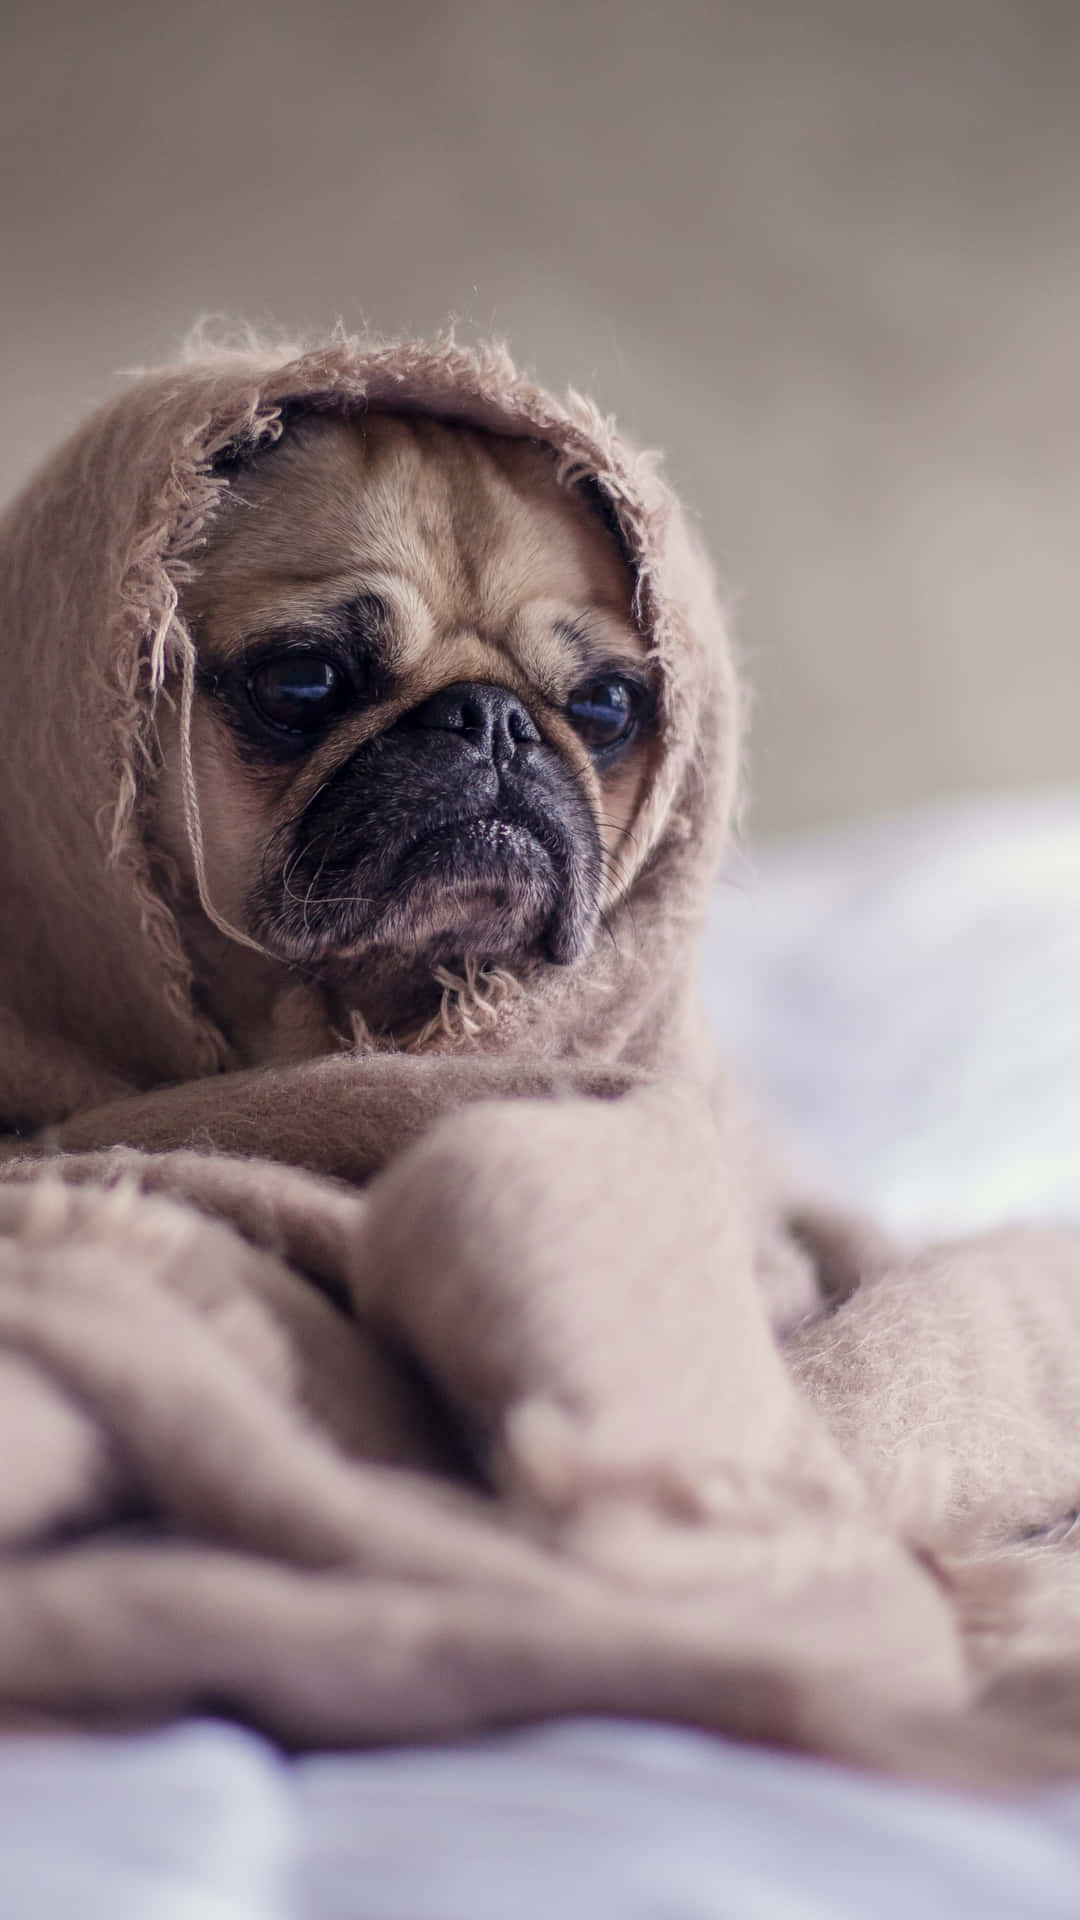 Einmops-hund In Eine Decke Gewickelt Auf Einem Bett. Wallpaper